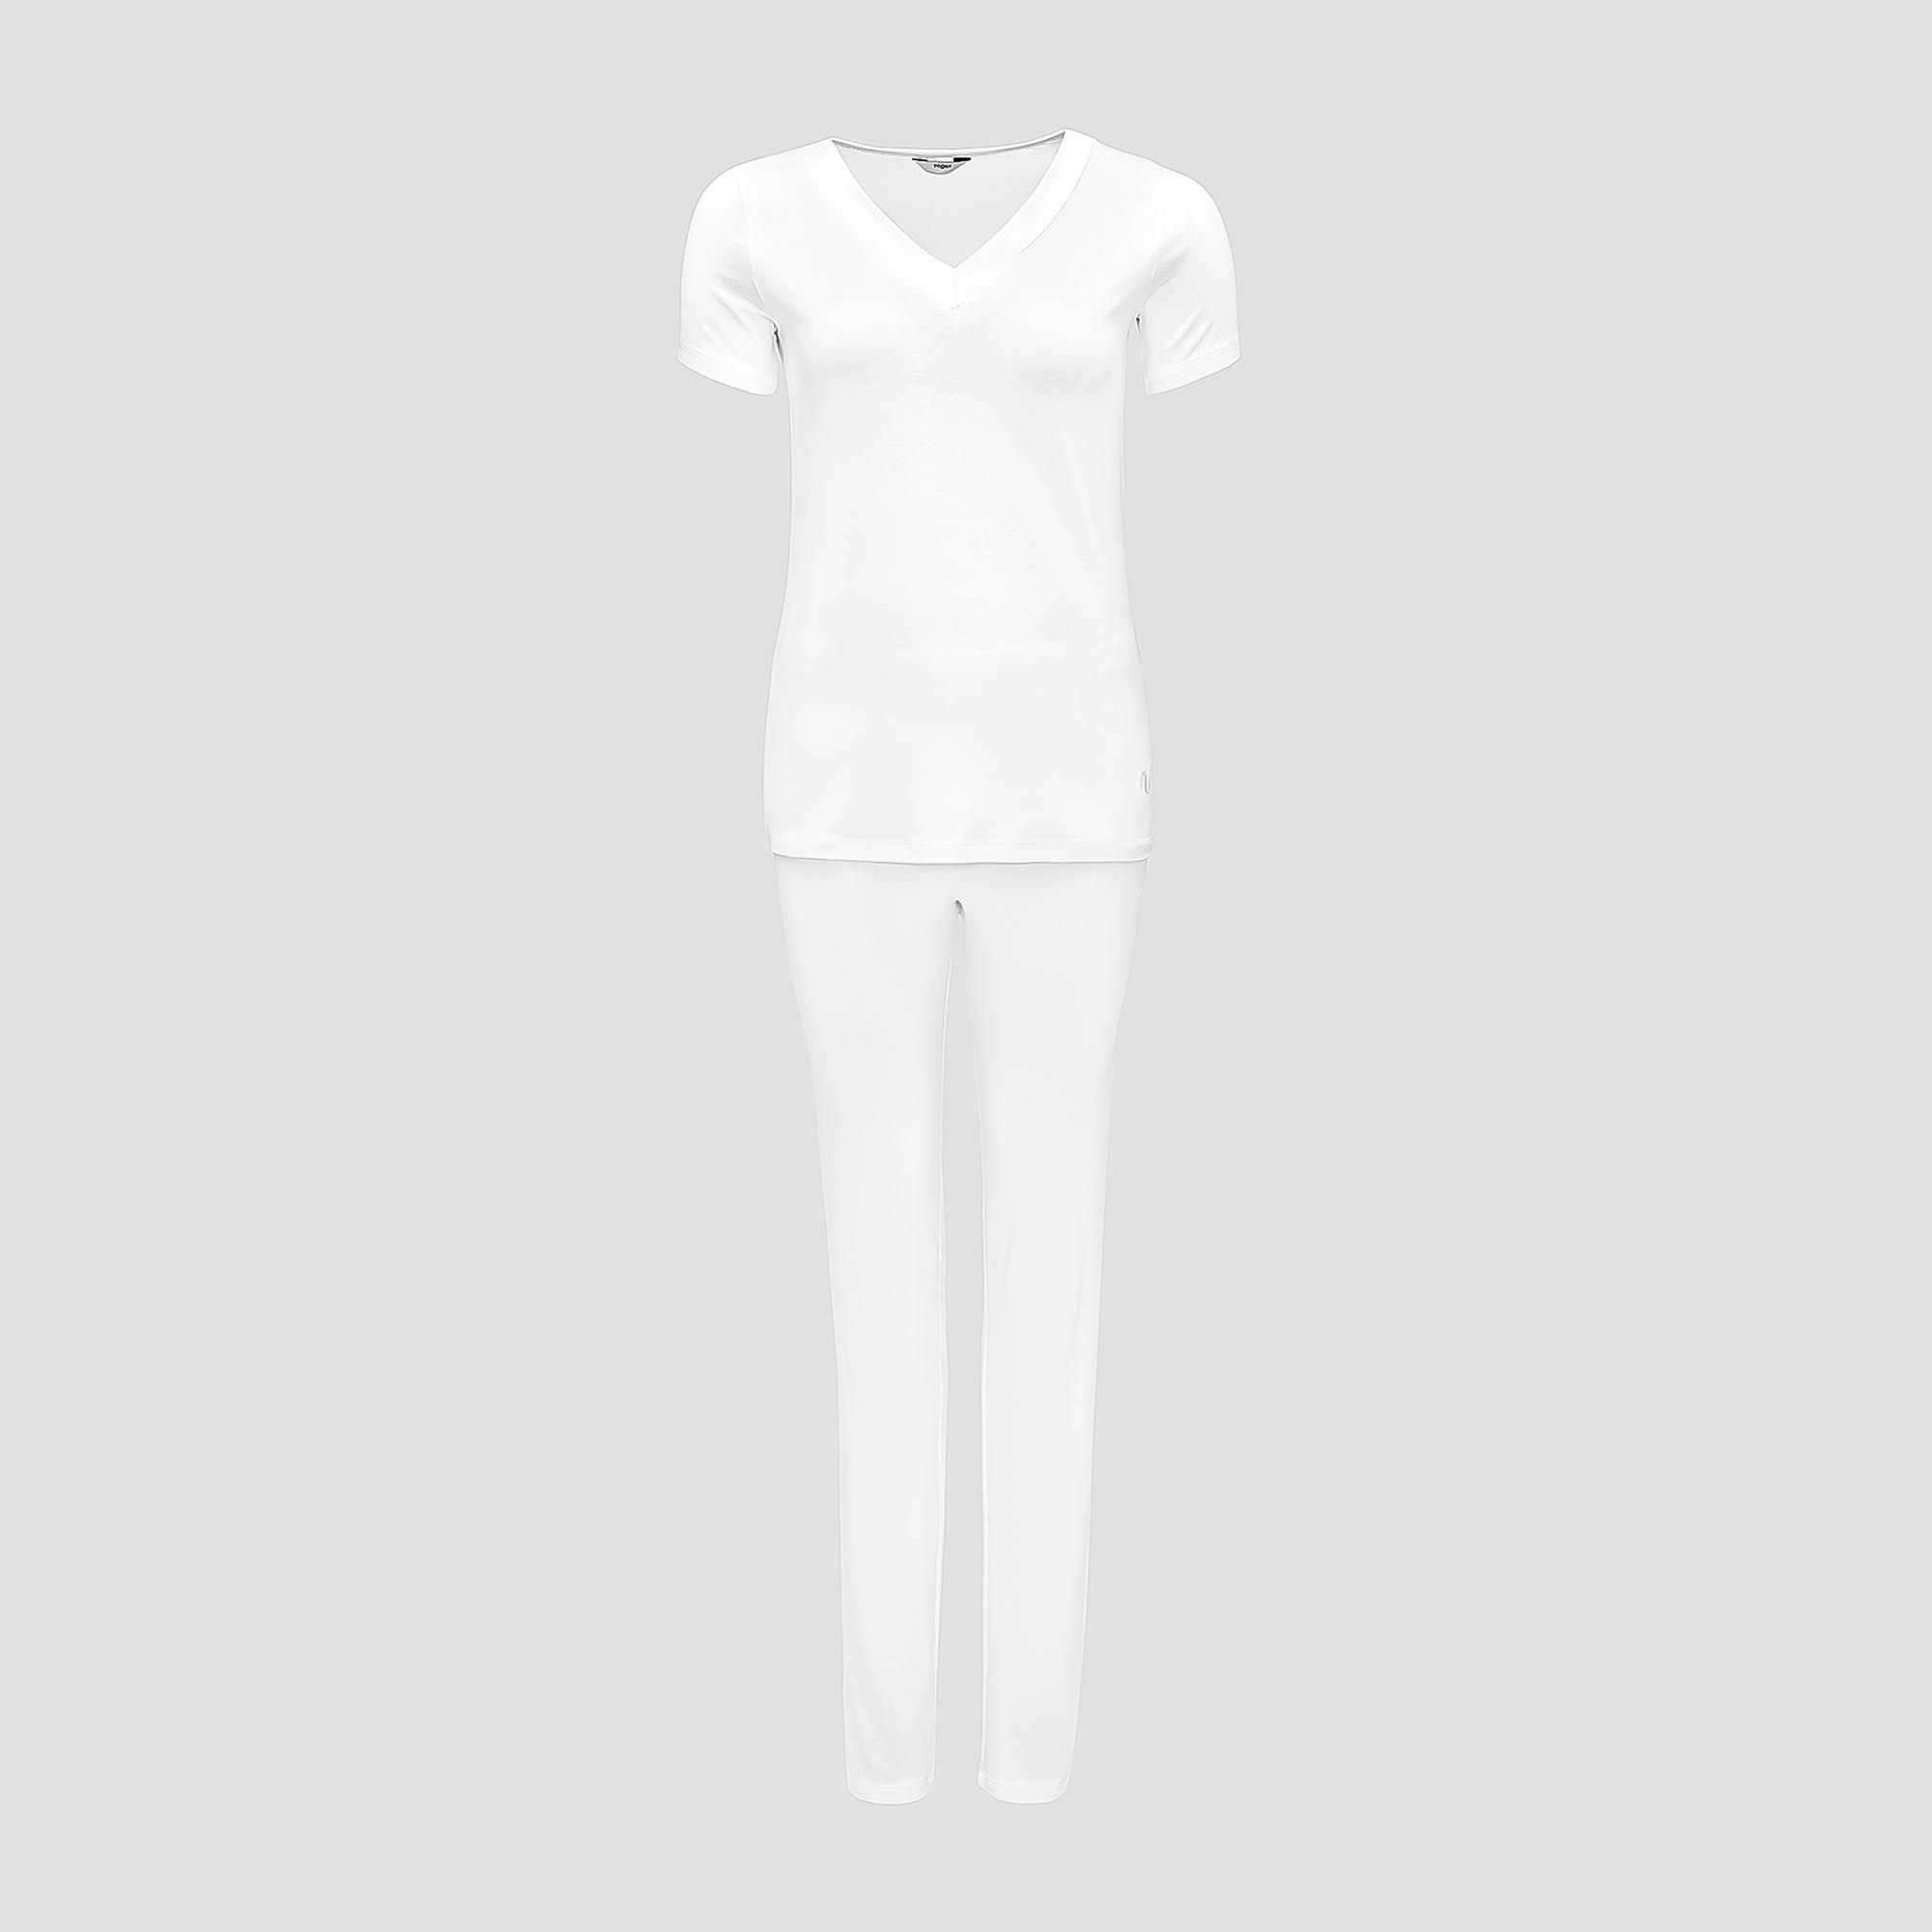 Пижама Togas Ингелла белая женская S(44) 2 предмета пижама togas ингелла белая женская l 48 2 предмета